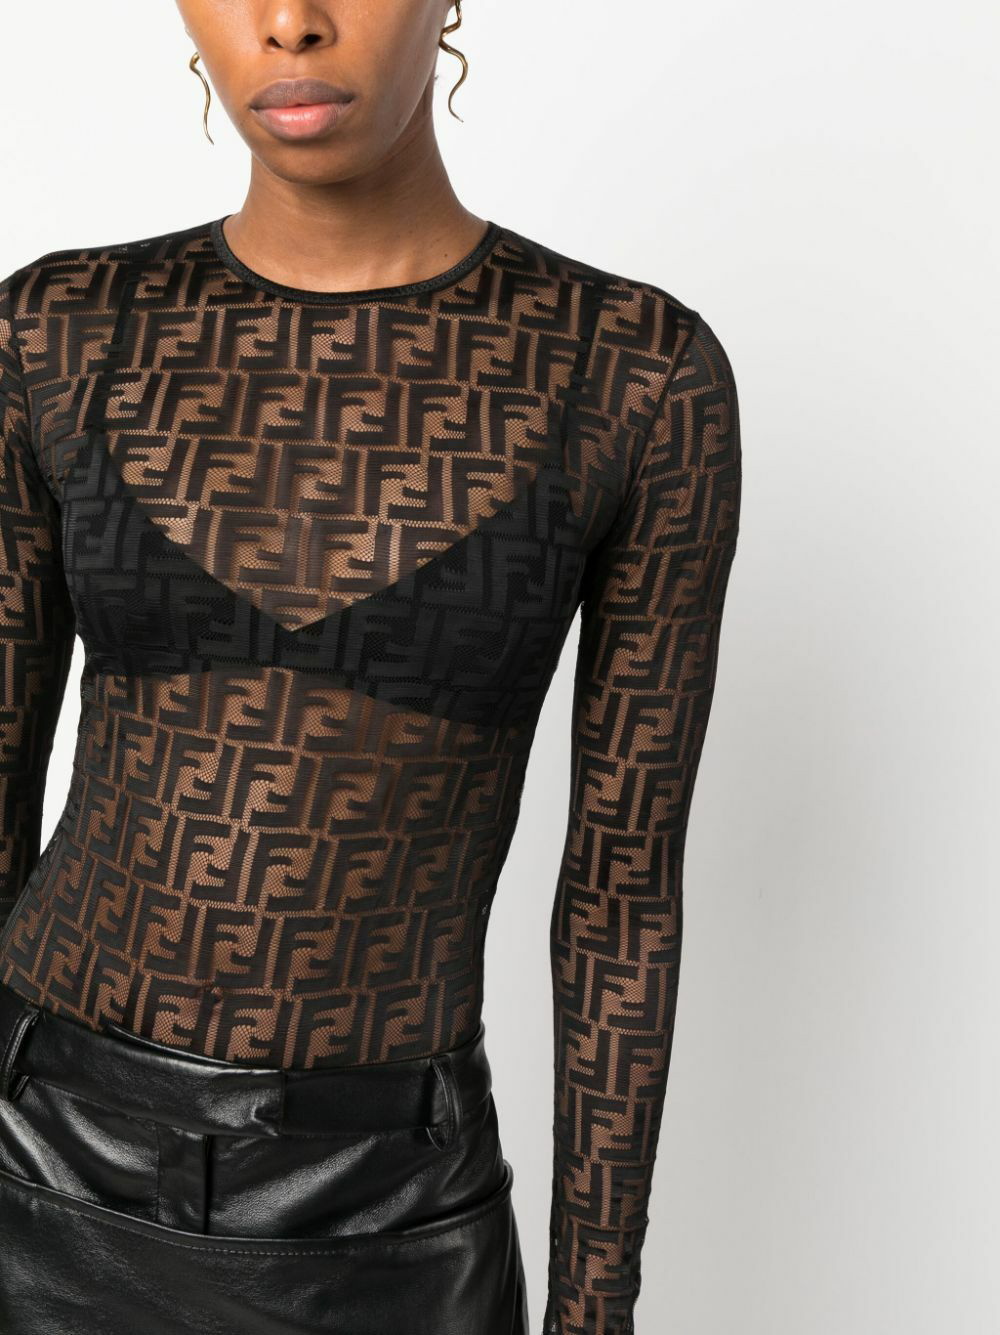 Fendi Micro Mesh Black Net Bodysuit W/ Bra L26905 Woman's Size L